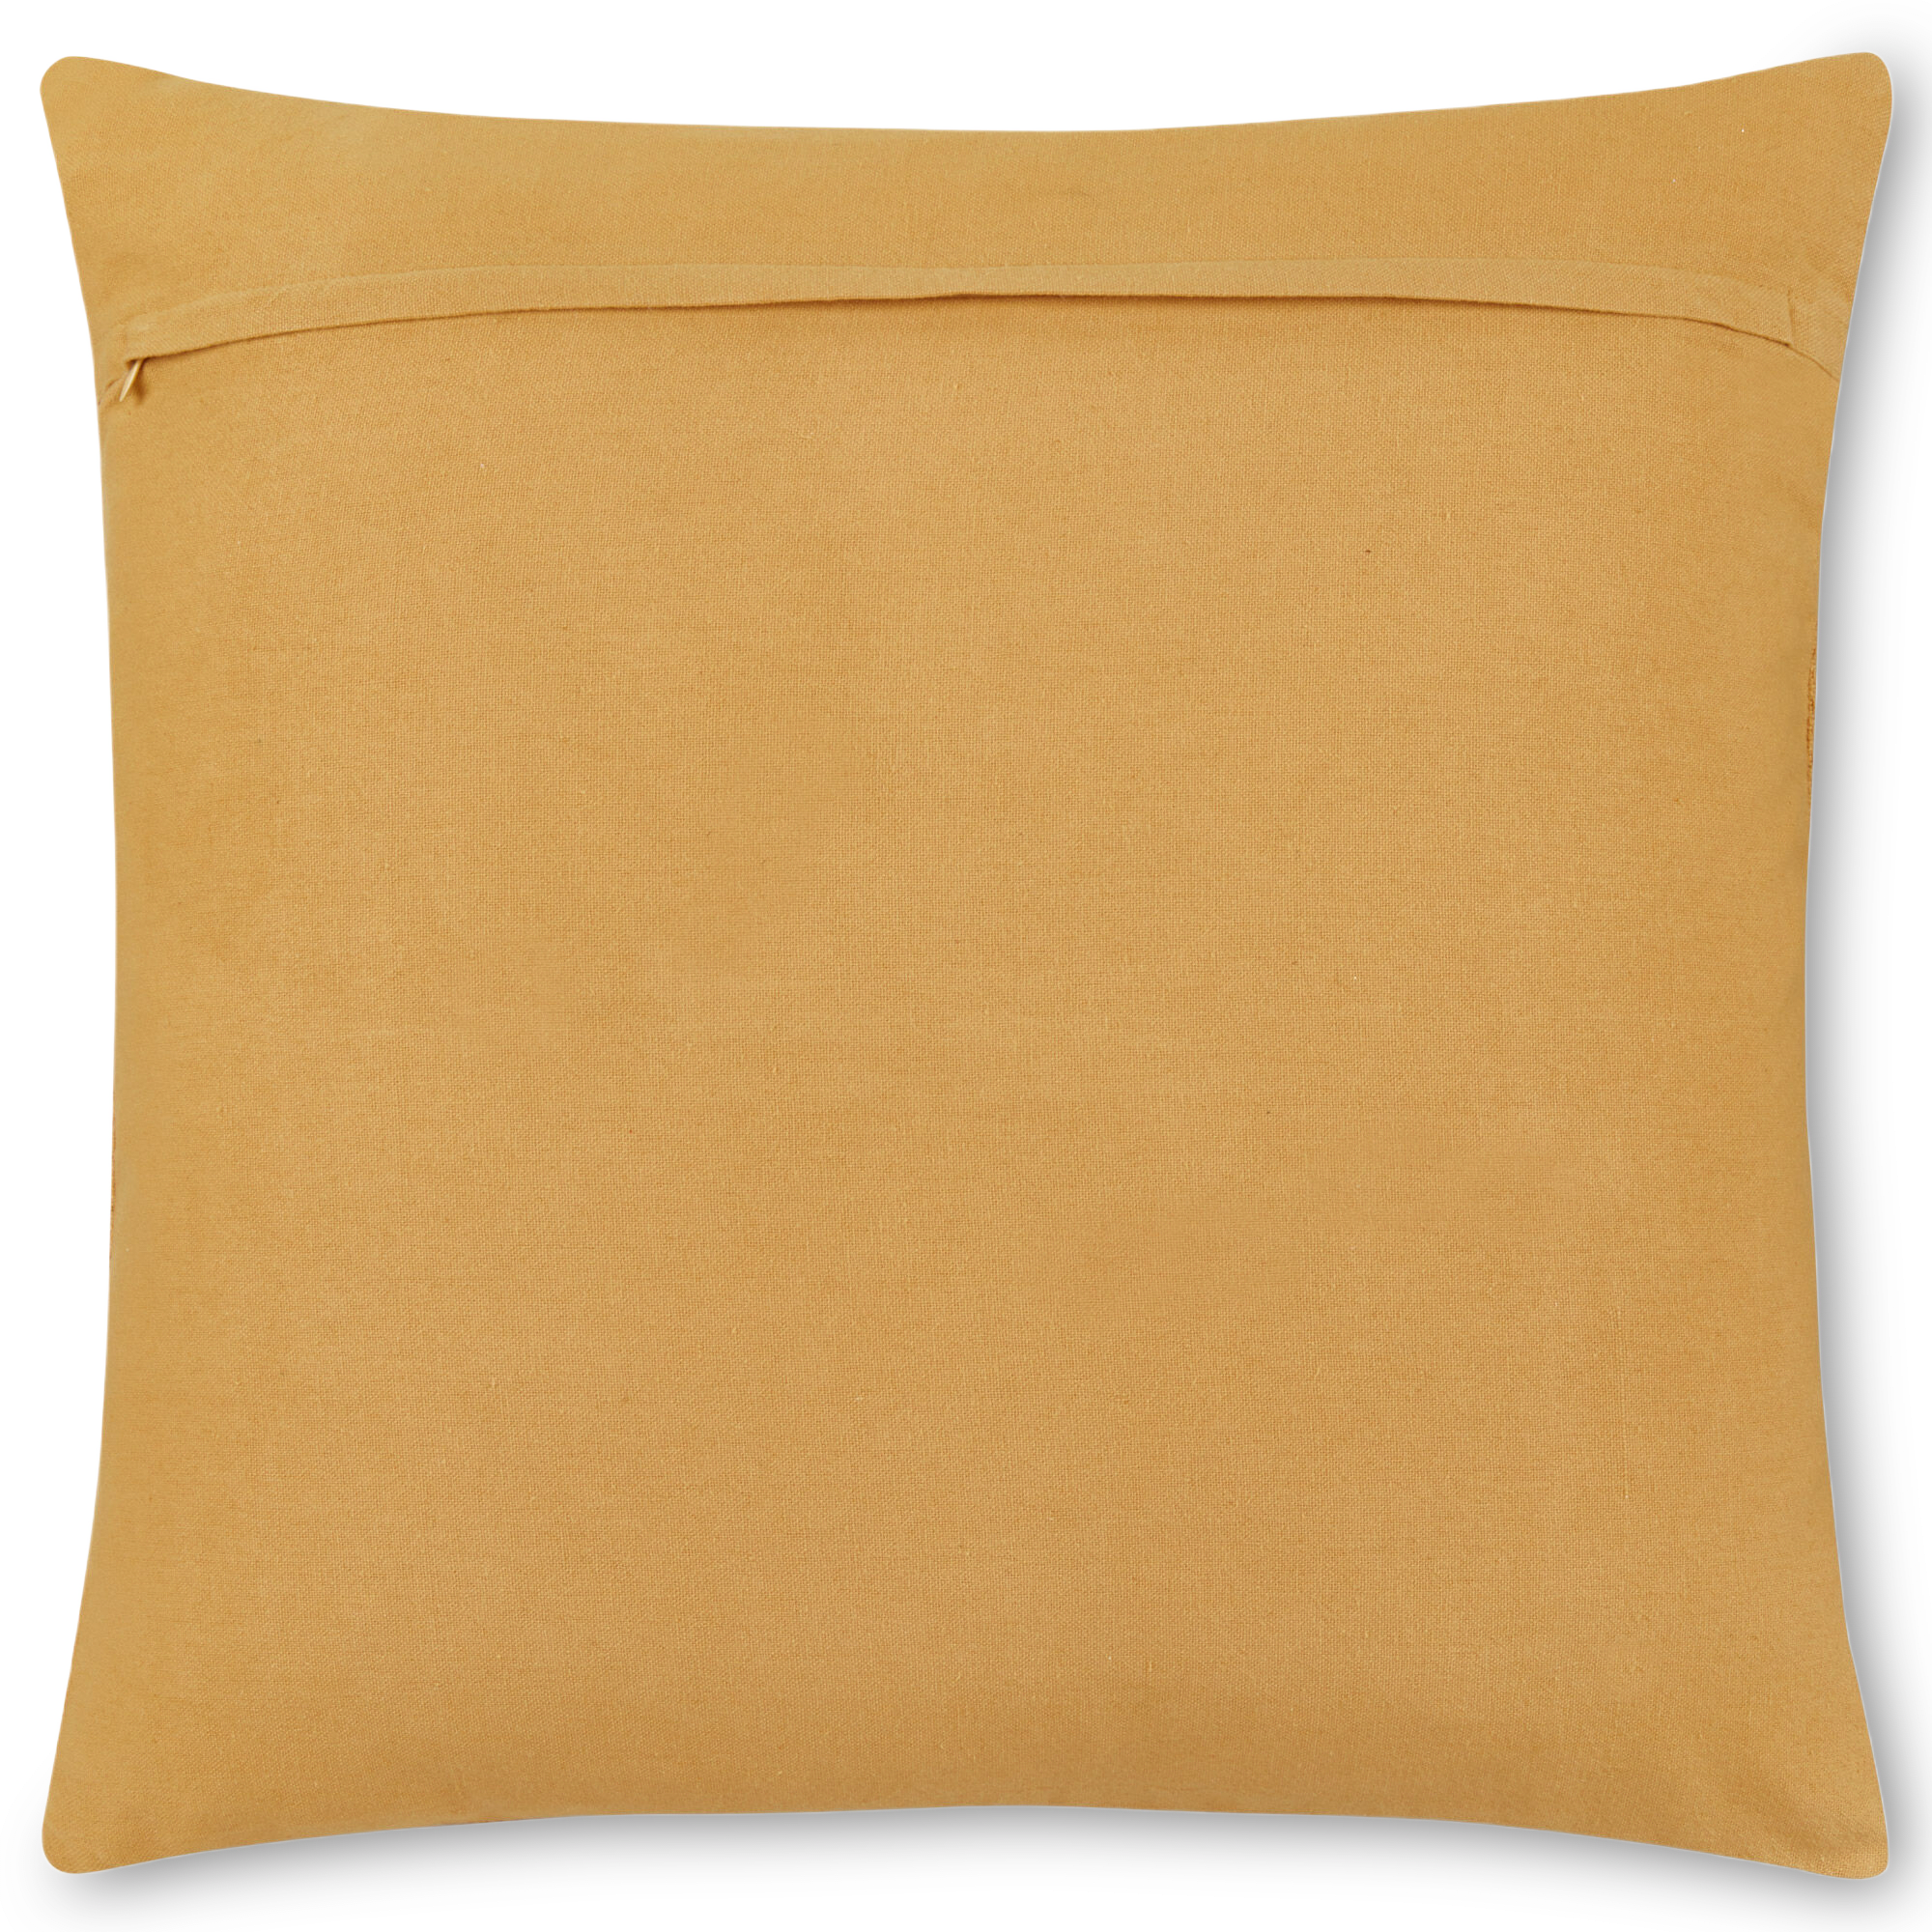 Arli Decorative Pillow 